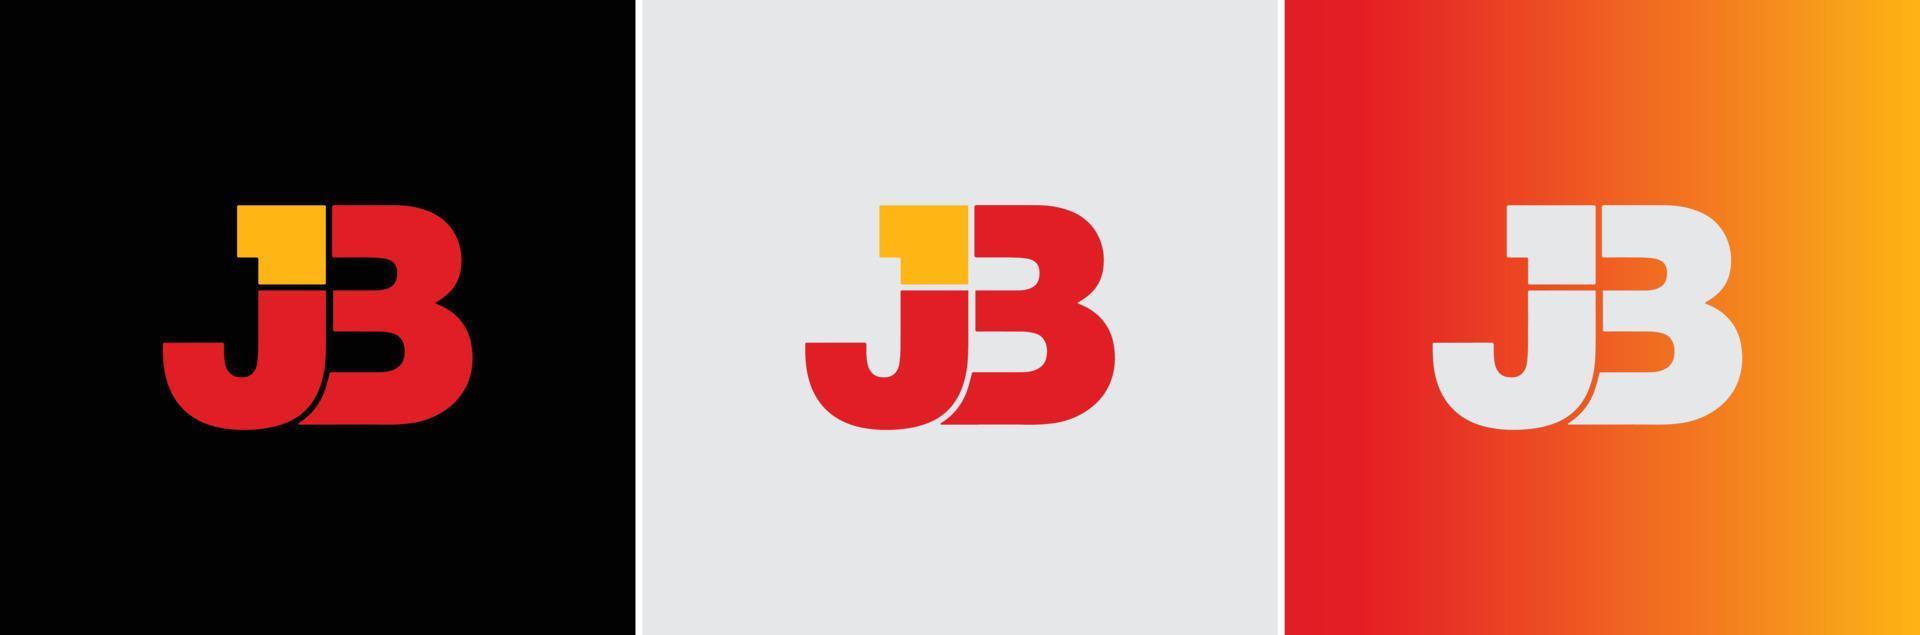 jb j3 logo creatief modern minimaal alfabet jb beginletter mark monogram bewerkbaar in vectorformaat vector